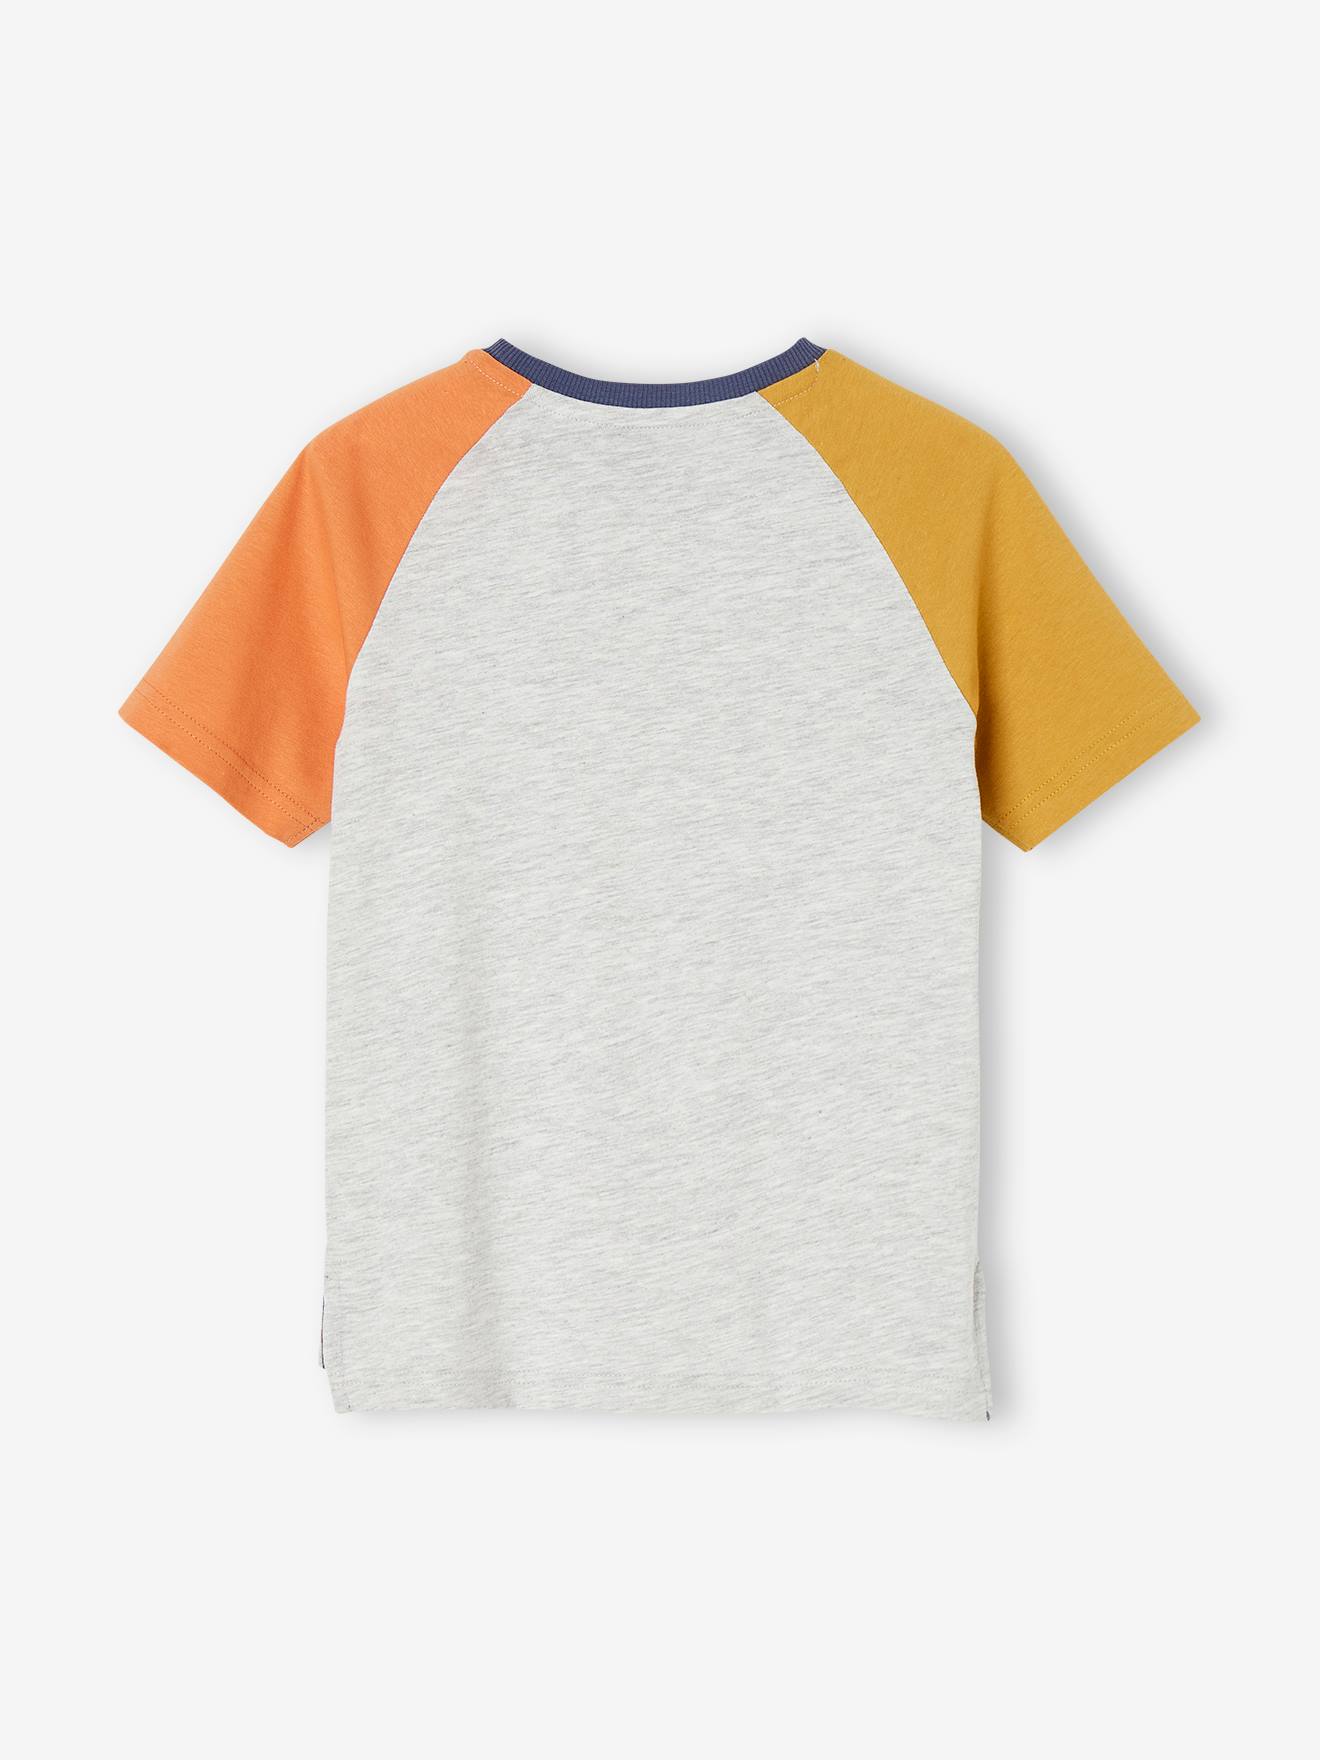 T-shirt colorblock tubarão, para menino-Menino 2-14 anos